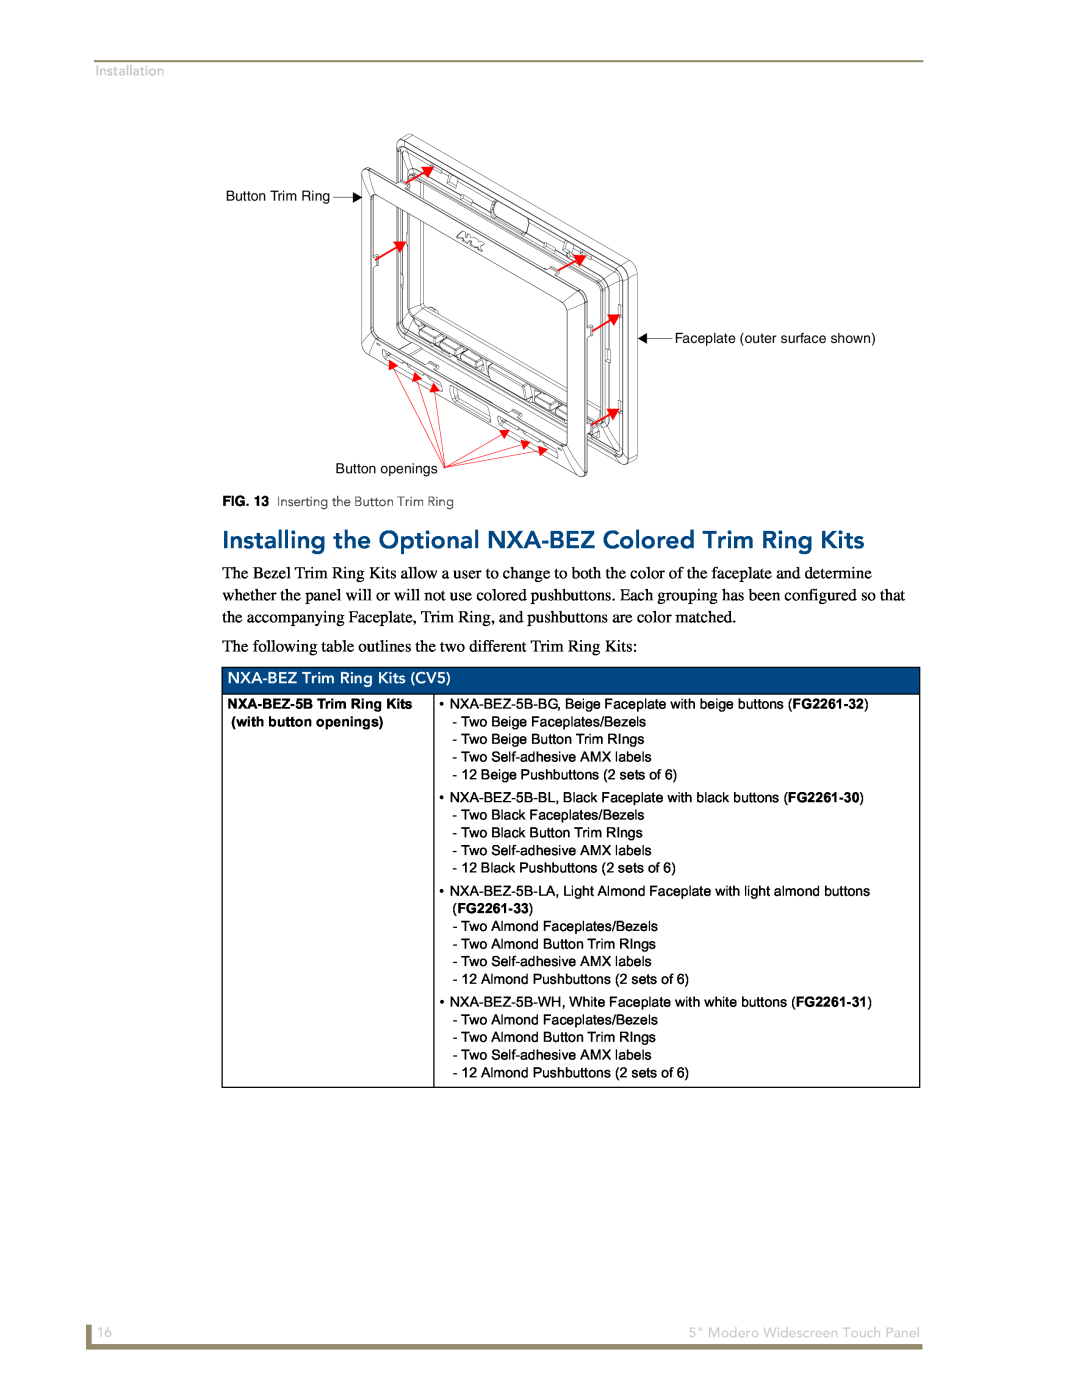 AMX NXD-CV5 manual Installing the Optional NXA-BEZ Colored Trim Ring Kits, NXA-BEZ Trim Ring Kits CV5, Installation 